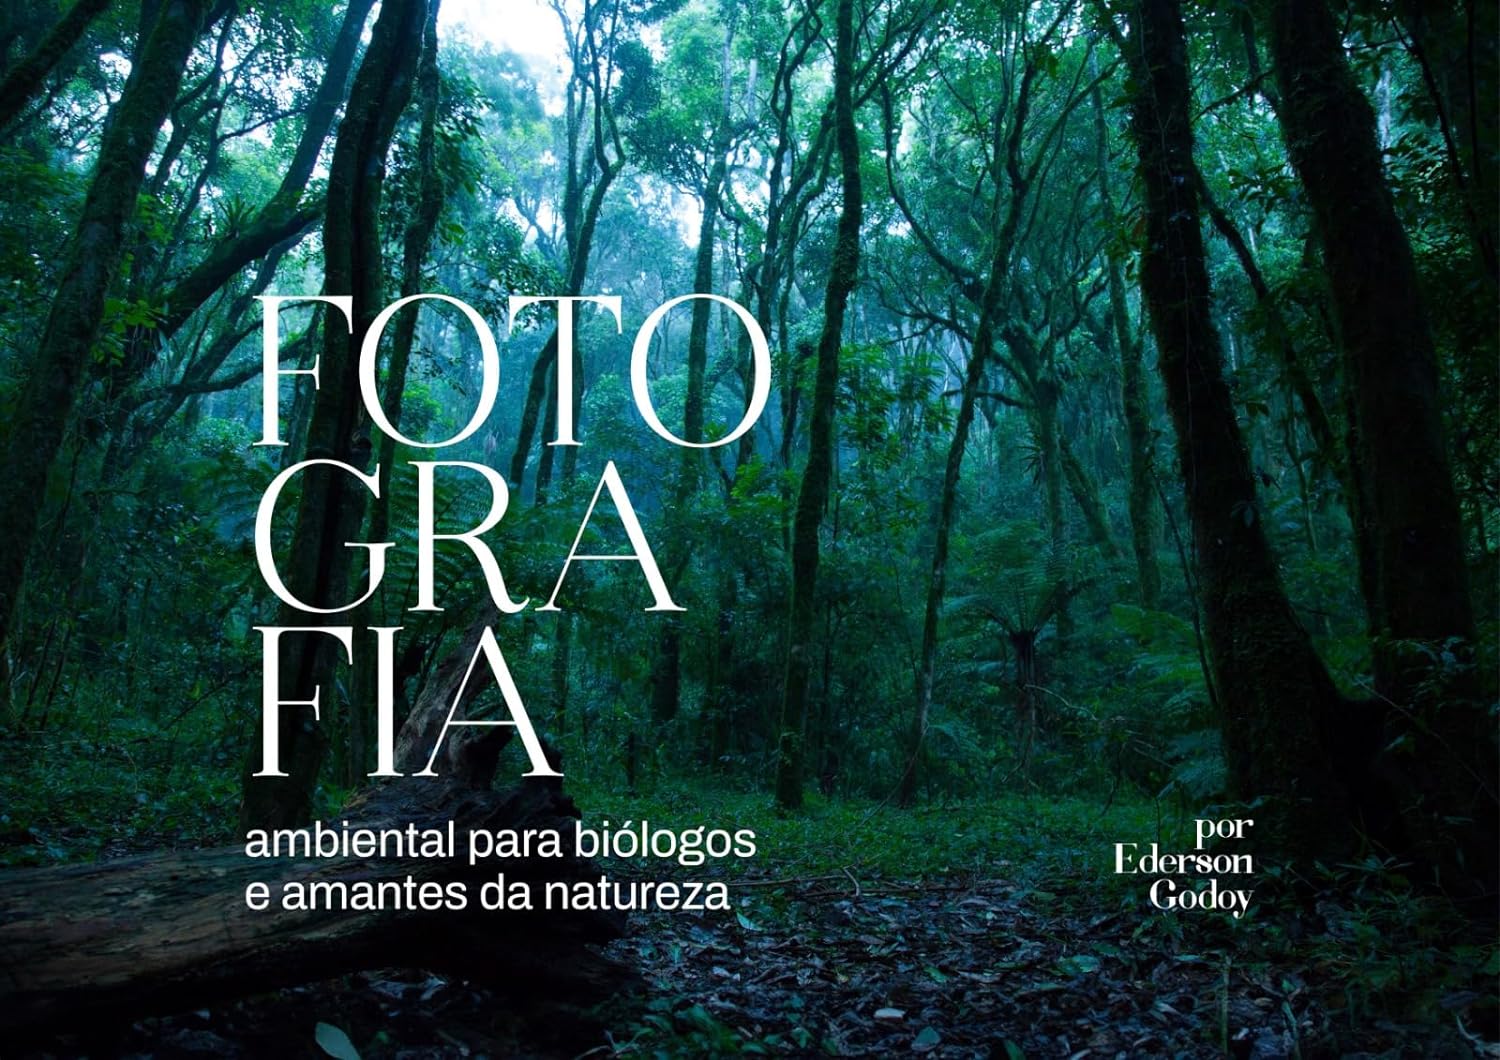 Biólogo de Poços lança livro de fotografia ambiental - POÇOS JÁ